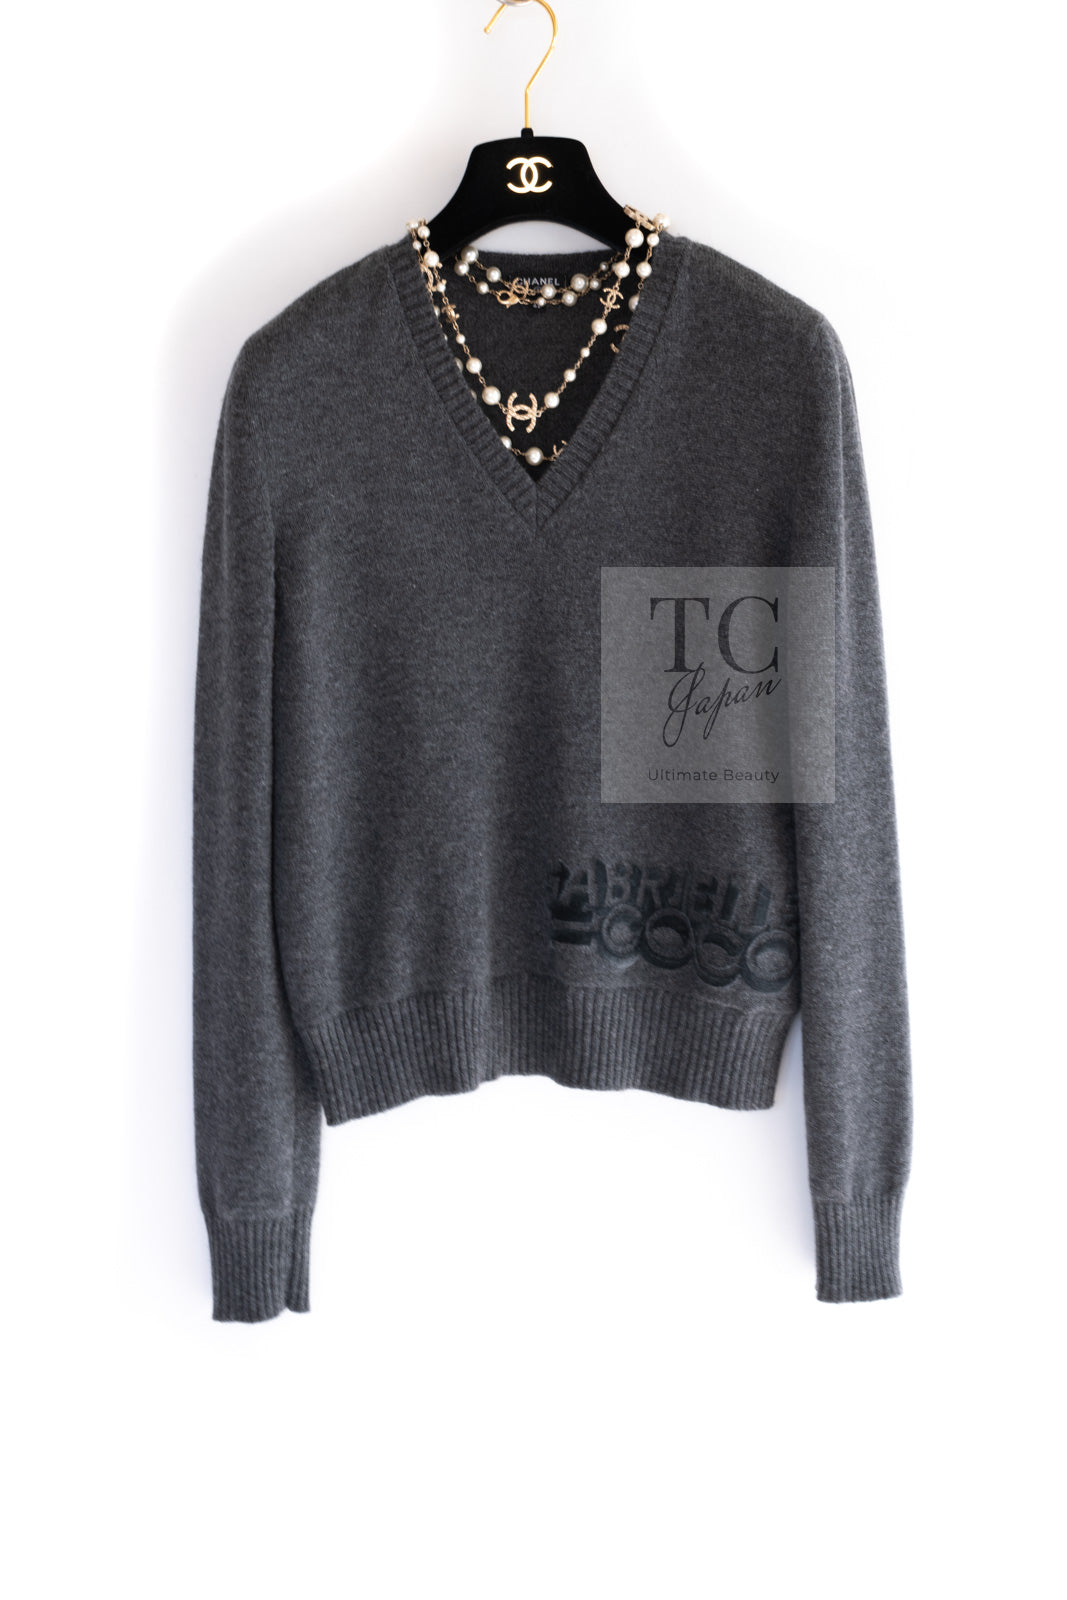 シャネル セーター トップス CHANEL Sweater Tops【正規品・専門店 